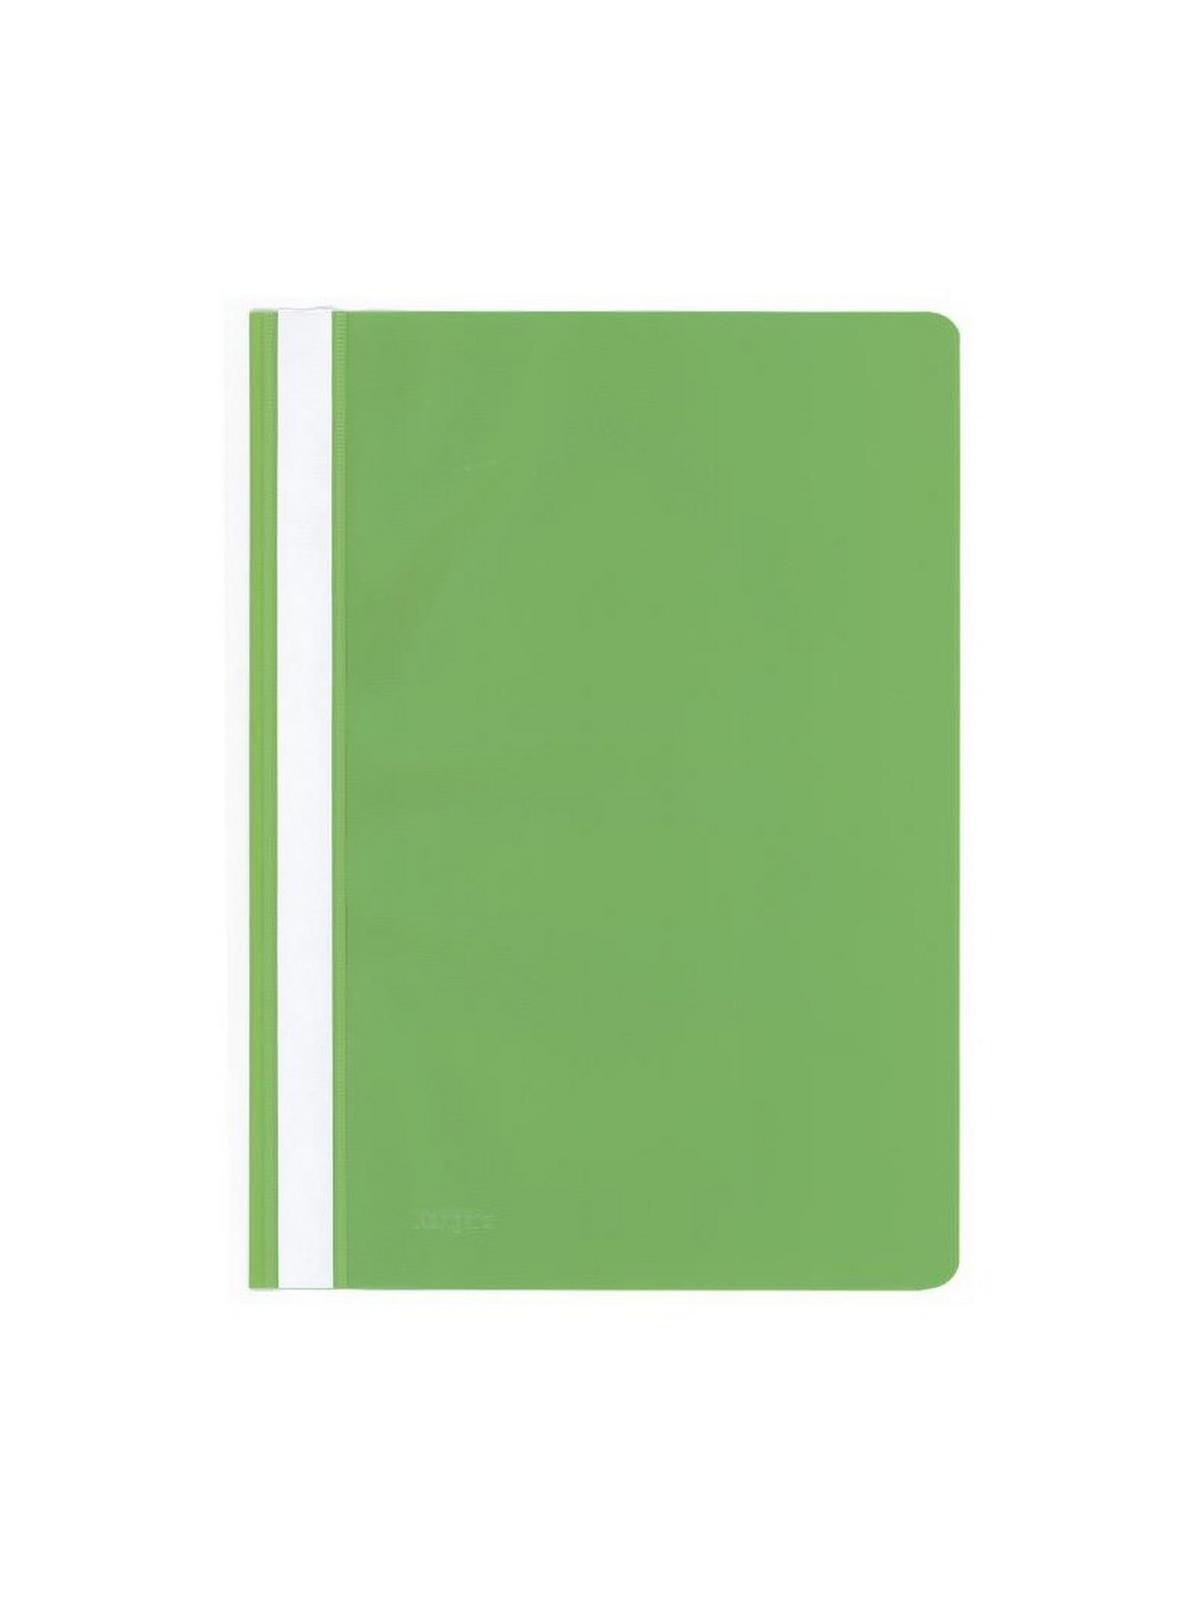 Ντοσιέ πλαστικο με έλασμα pp (Flat Files) πράσινο